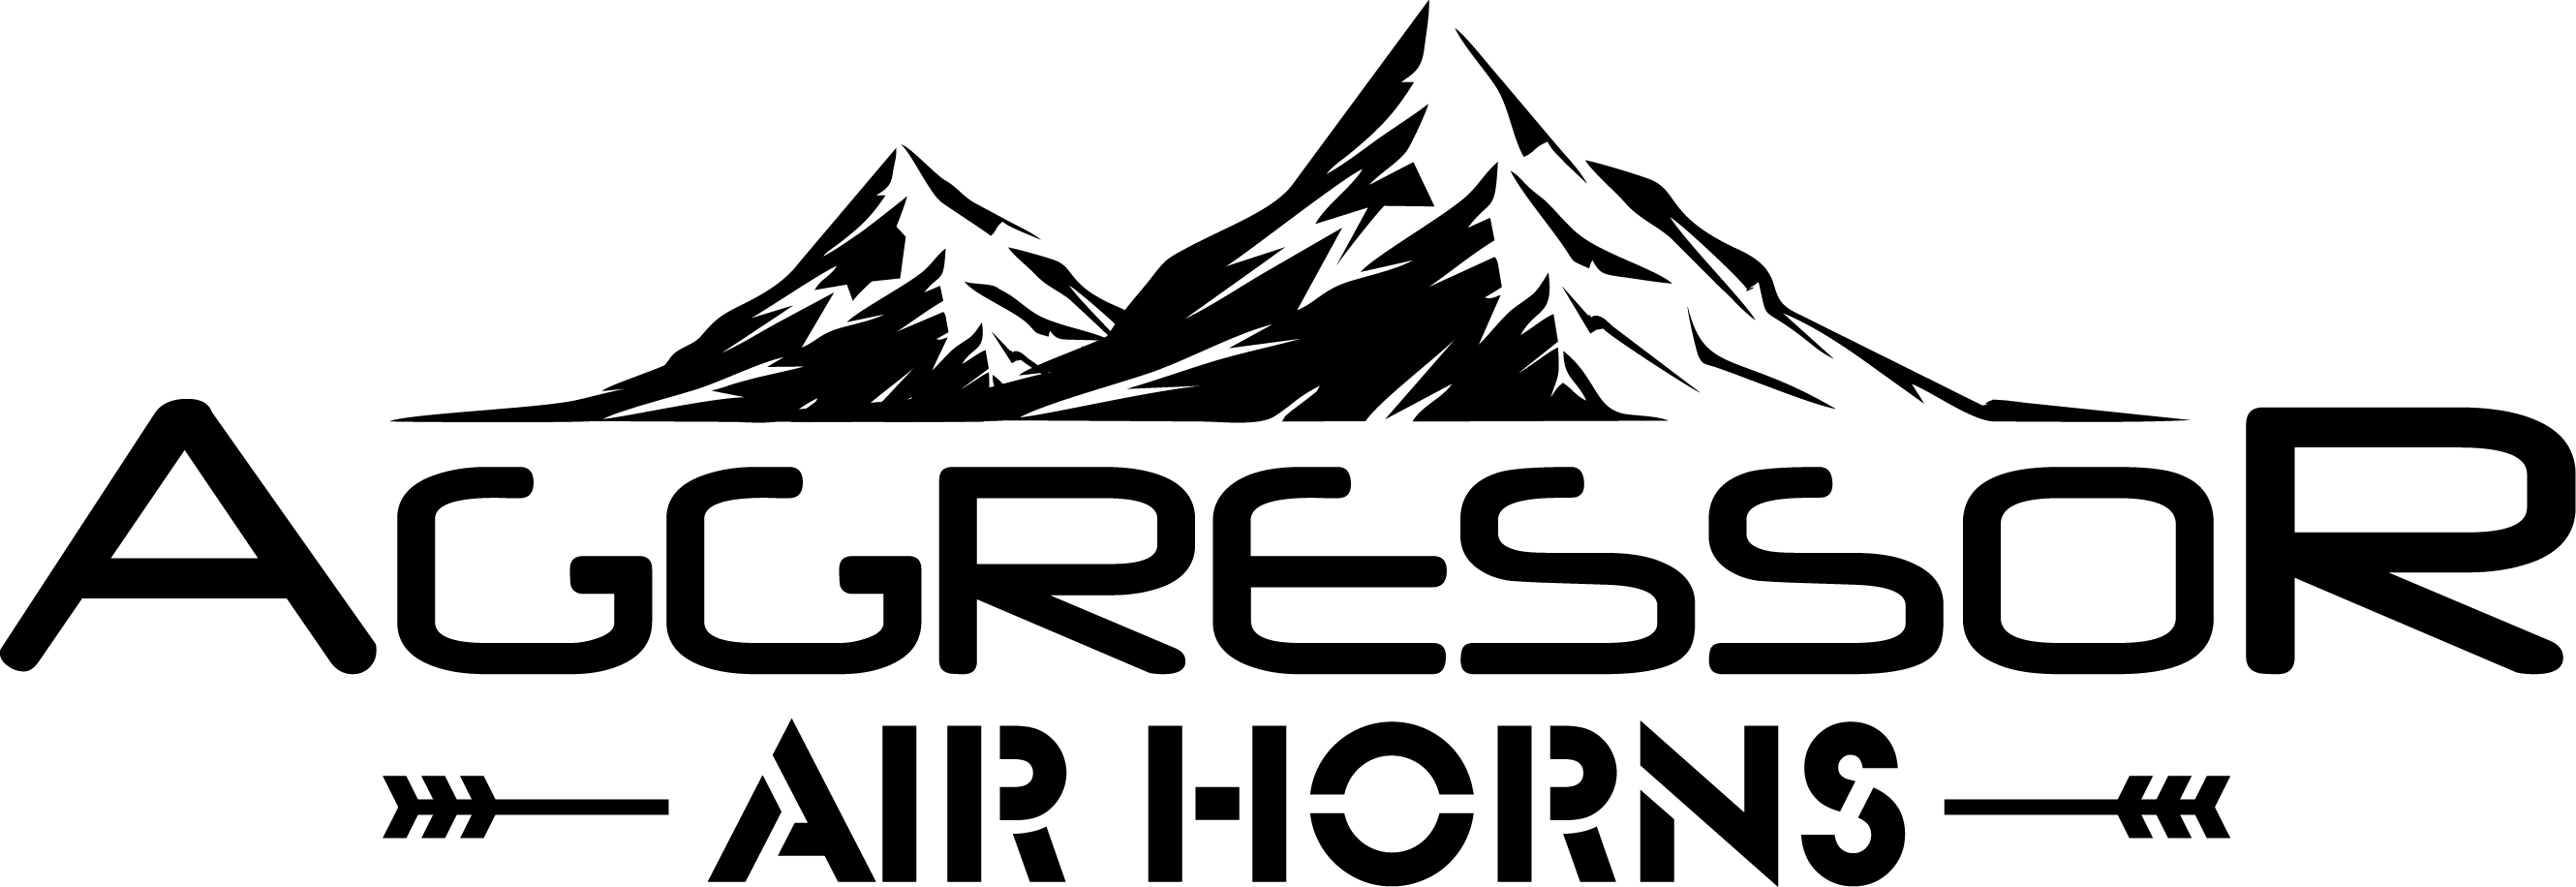 Aggressor logo